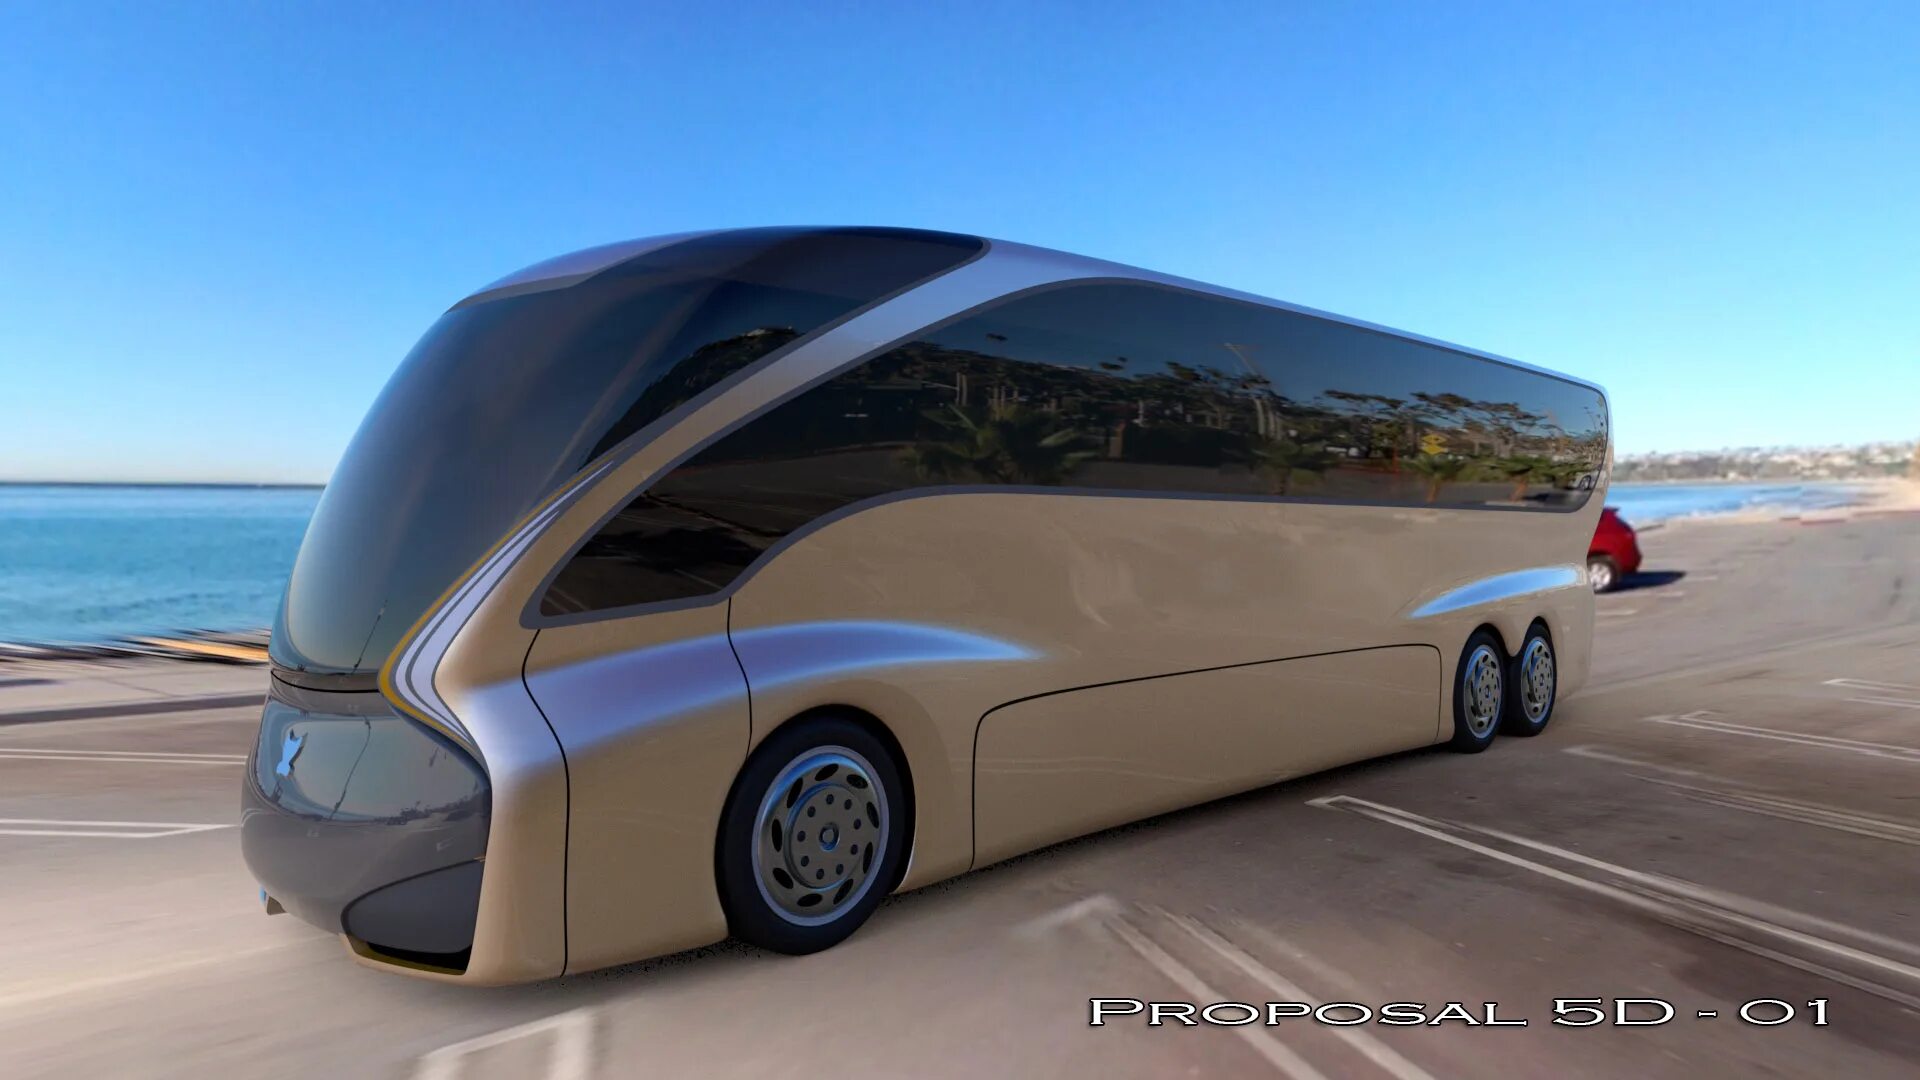 Общественный автомобиль. Автобус будущего. Автобус концепт. Концепт автобуса будущего. Футуристический автобус.